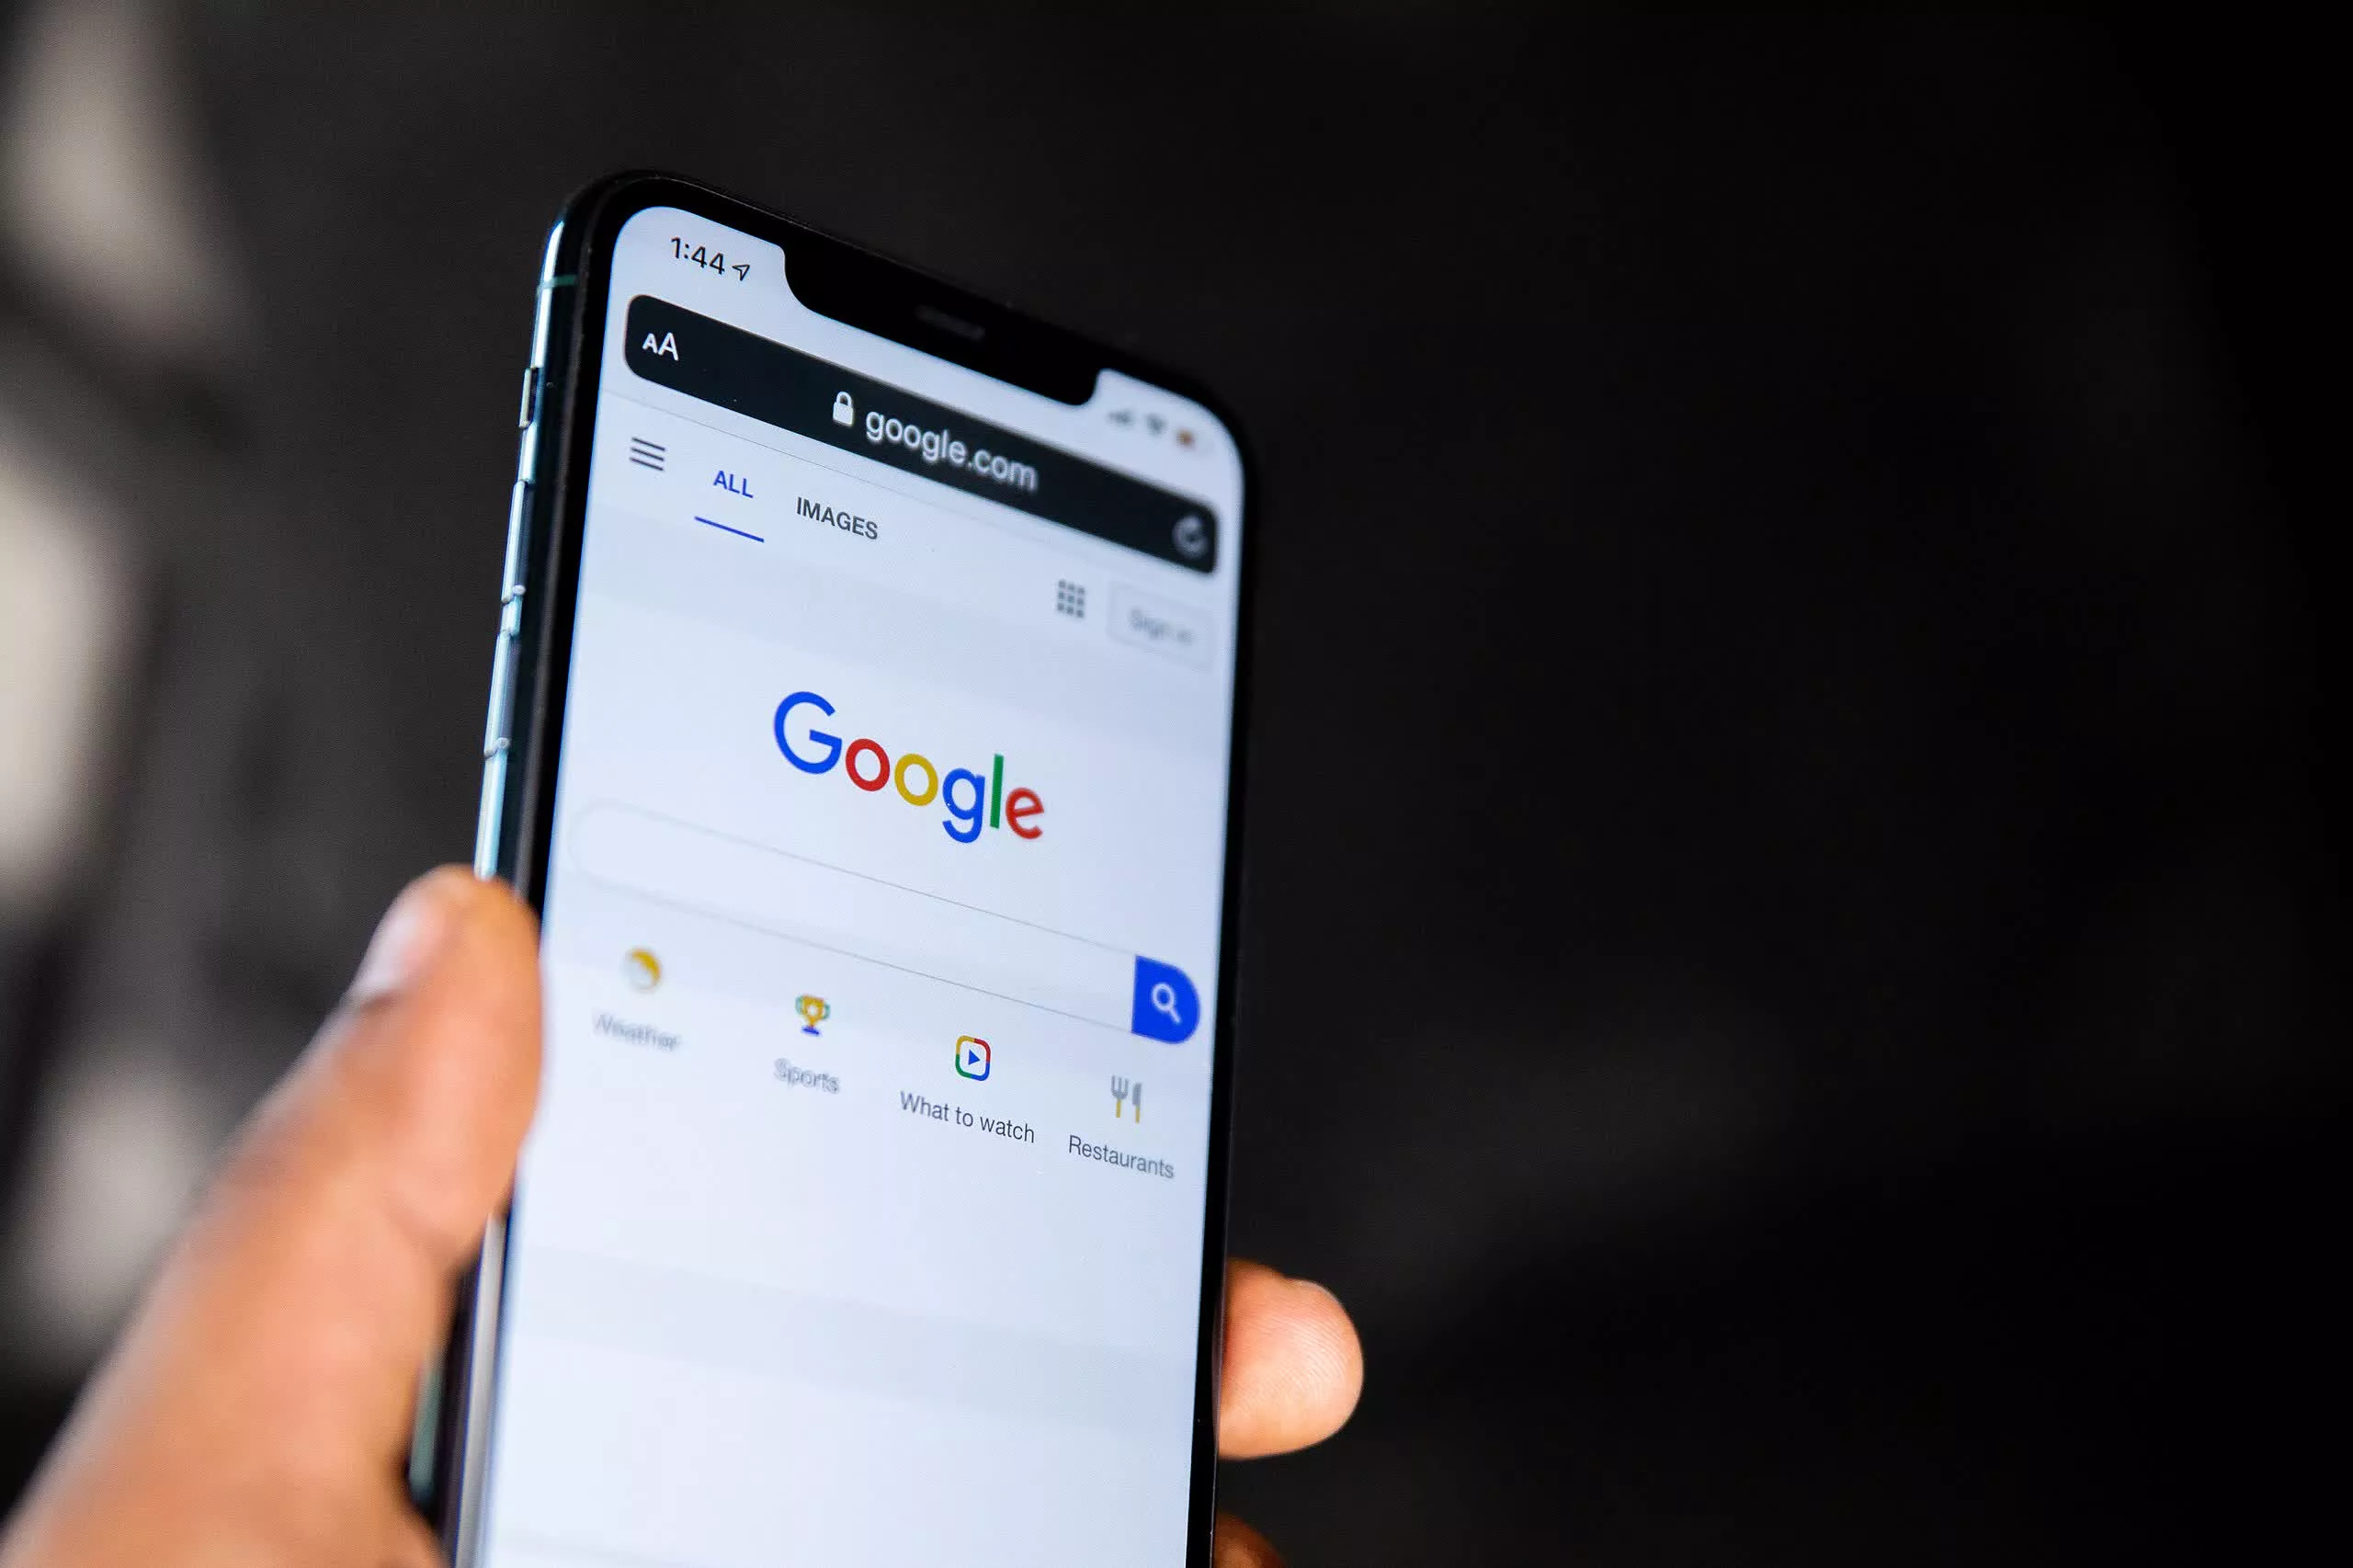 Google defiende la fallida búsqueda con IA, aunque promete mejoras